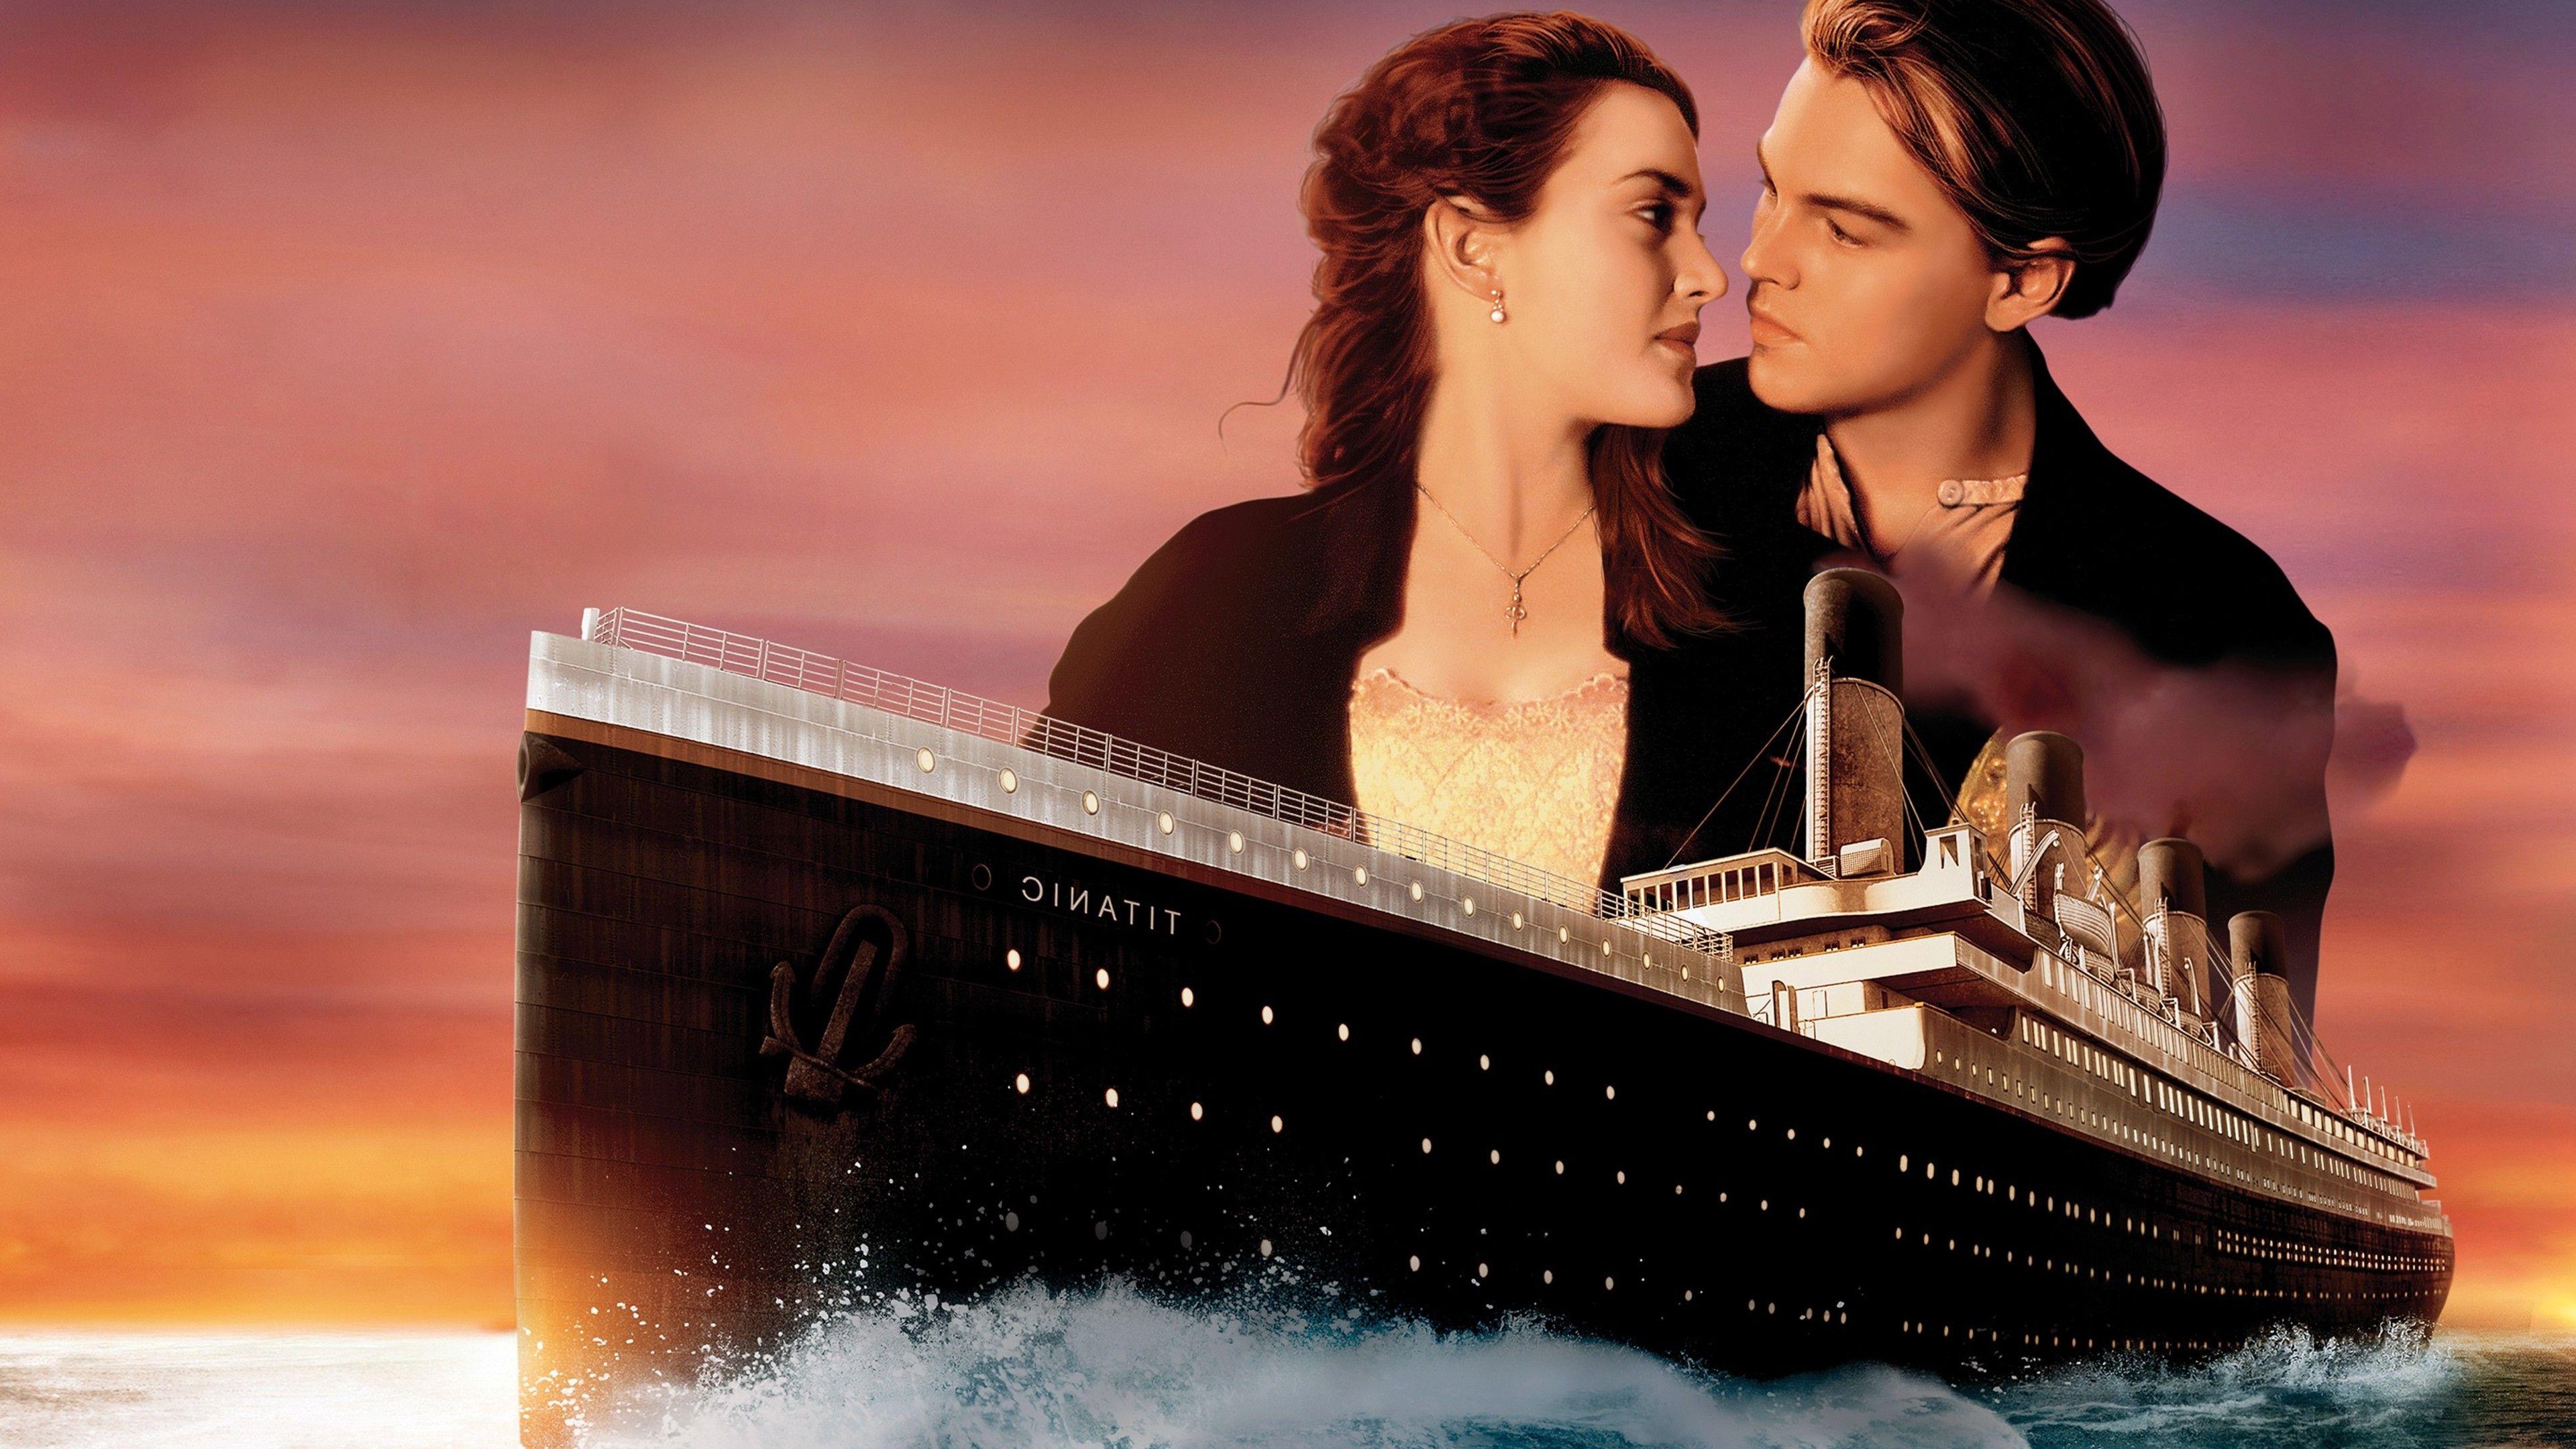 Titanic Wallpapers - Top Những Hình Ảnh Đẹp